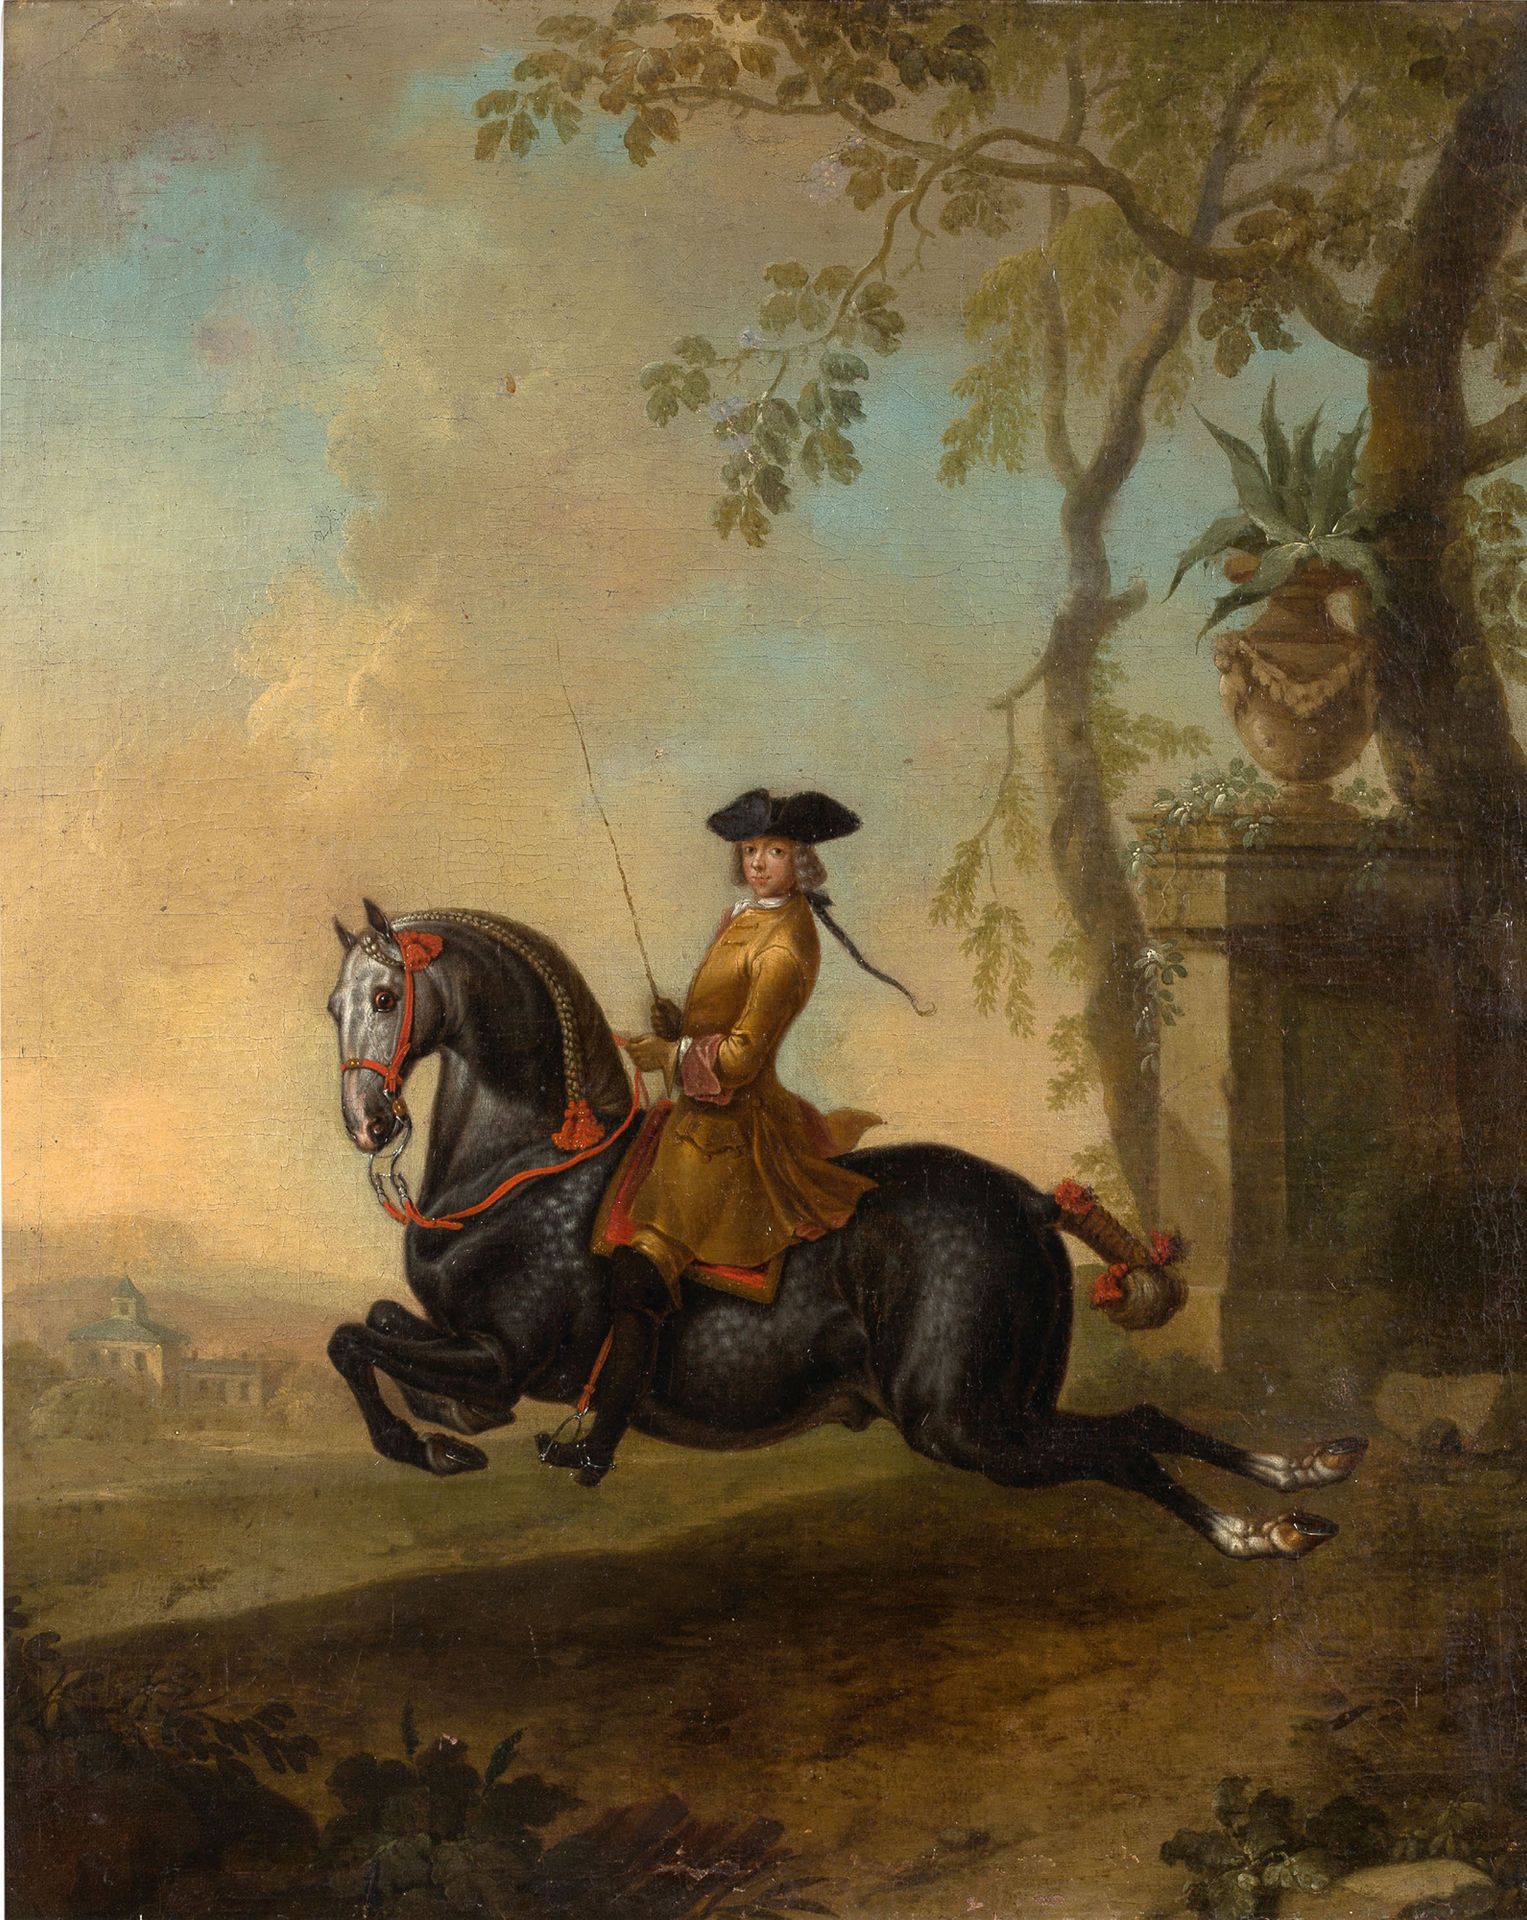 JOHANN GEORG DE HAMILTON MUNICH, 1672 - 1737, VIENNE 骑手骑着他的Lipizzaner表演Capriole
&hellip;